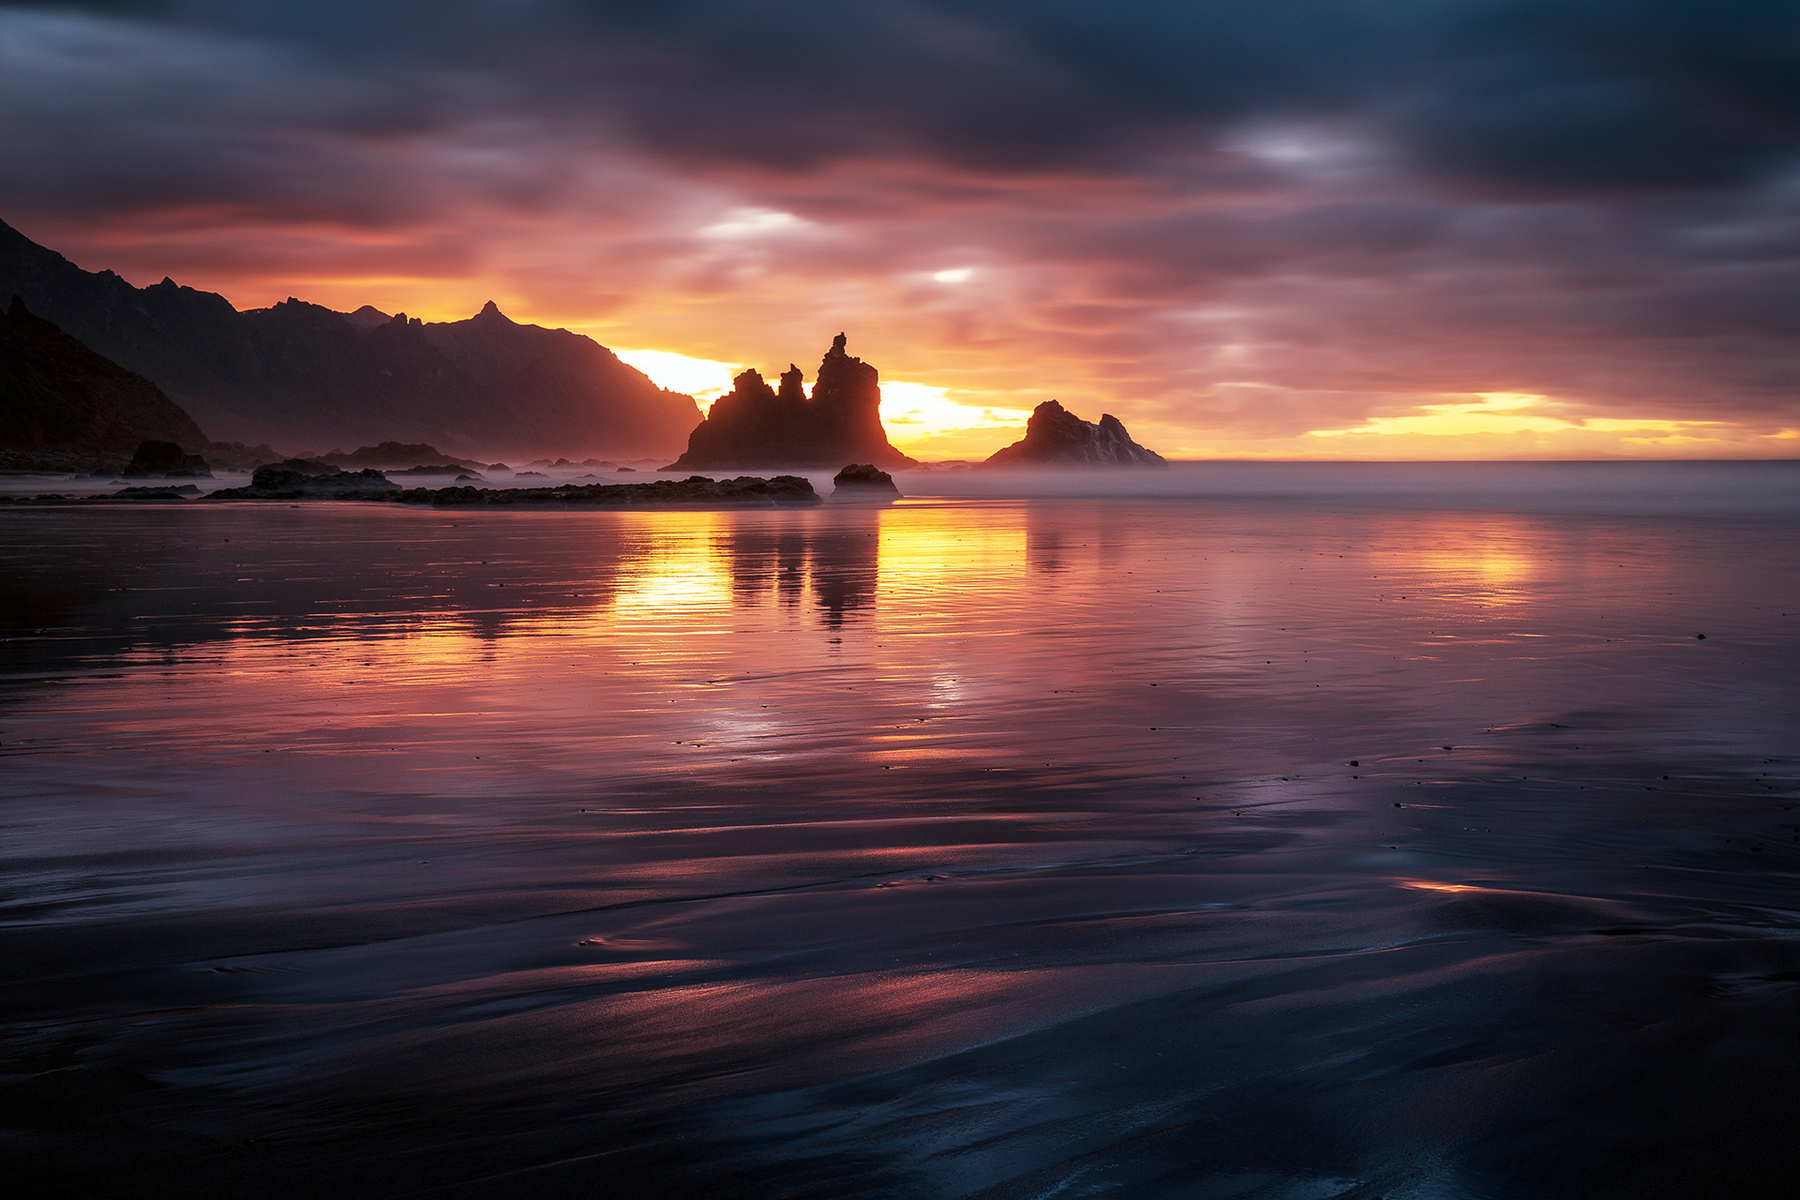 Отблеск давно минувшего дня Испаня Тенерифе Бенихо закат отражения скалы облака океан пляж песок небо вода